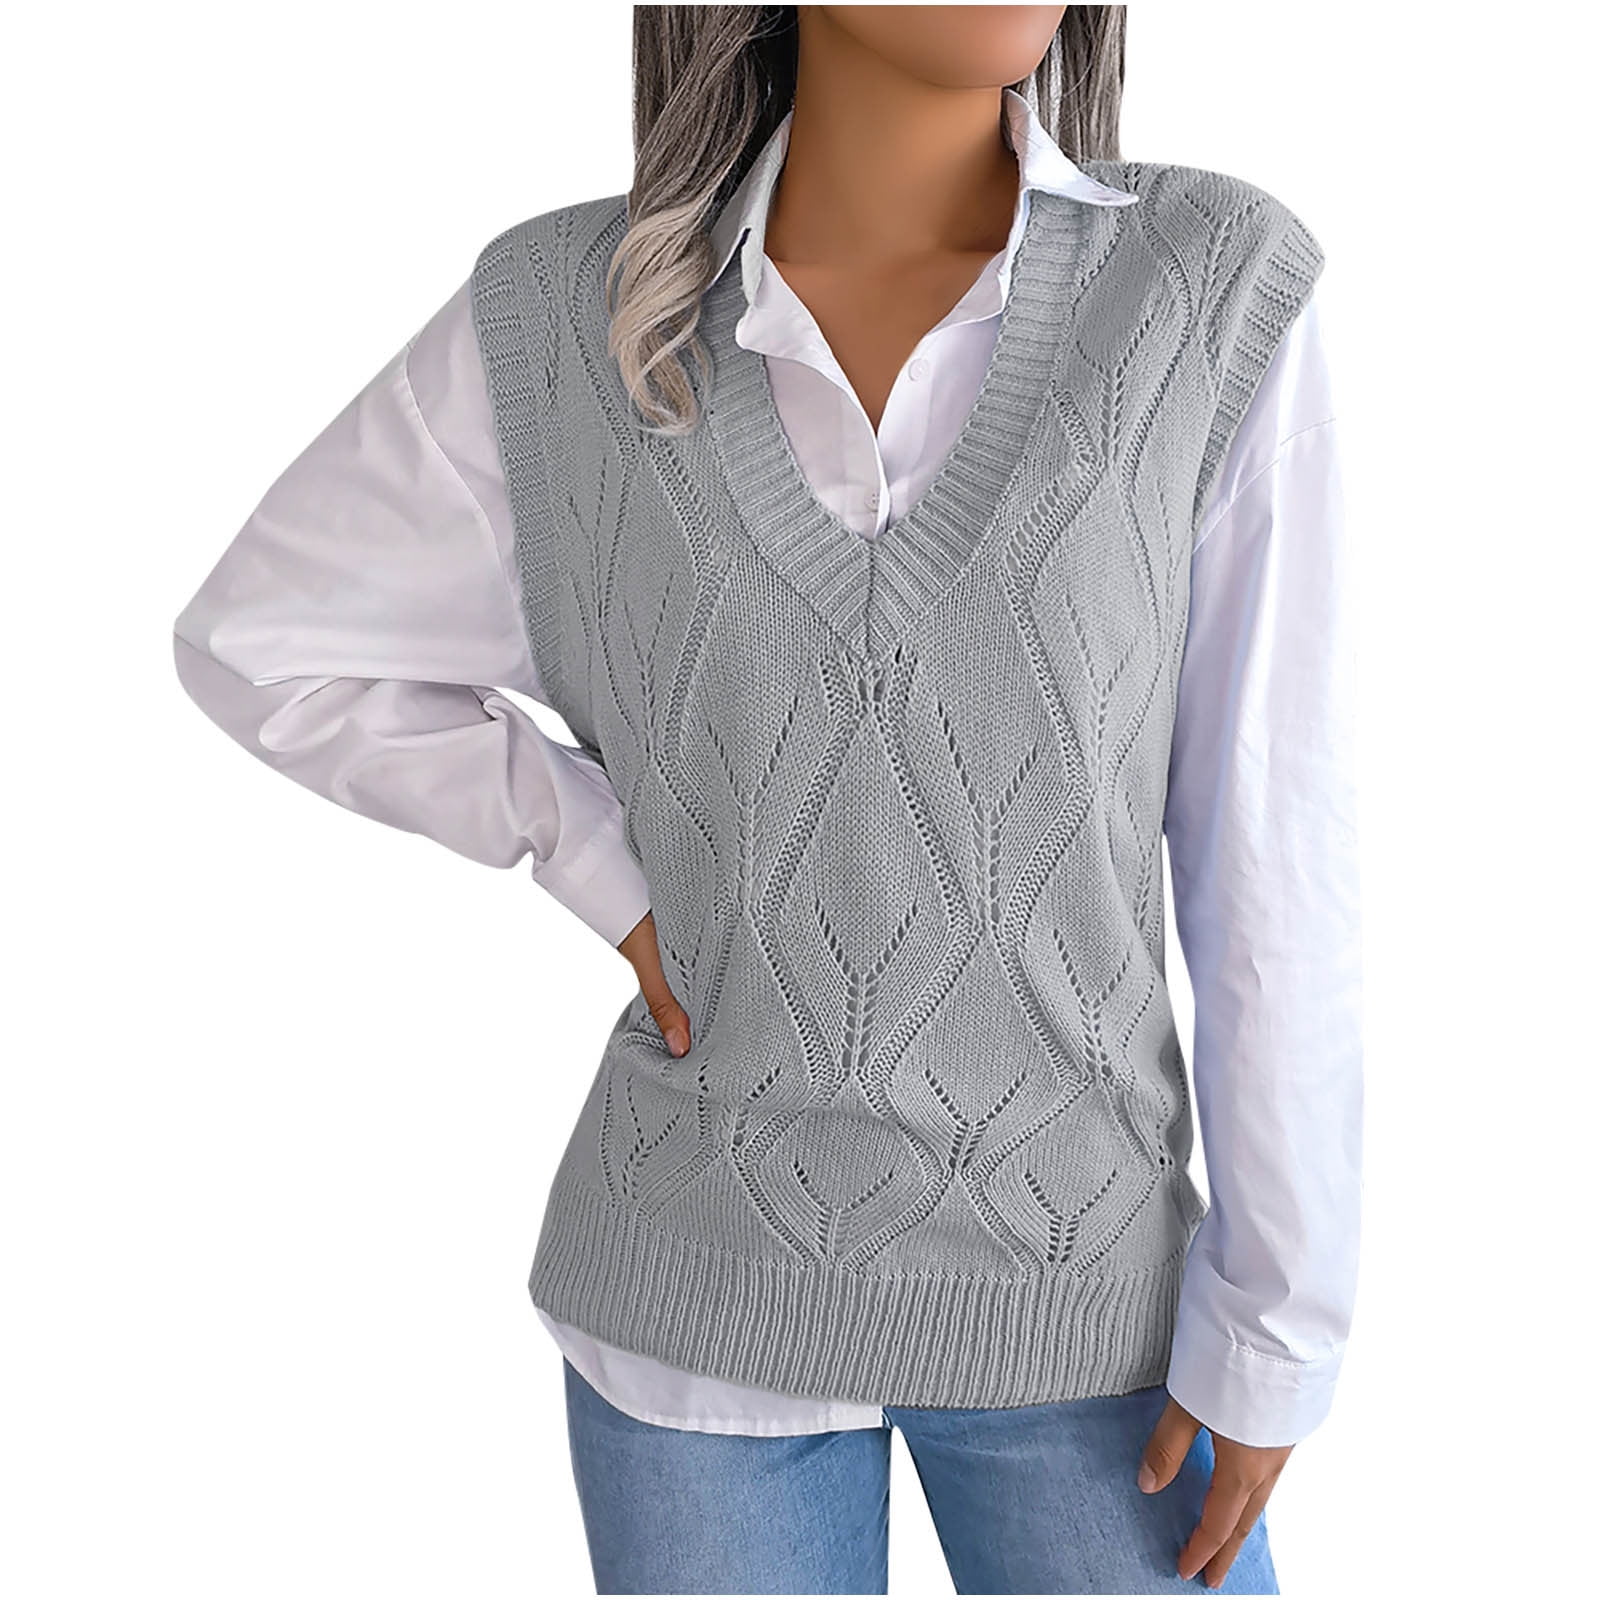 XFLWAM Women Cute Heart Plaid Print Sweater Vest V Neck Color